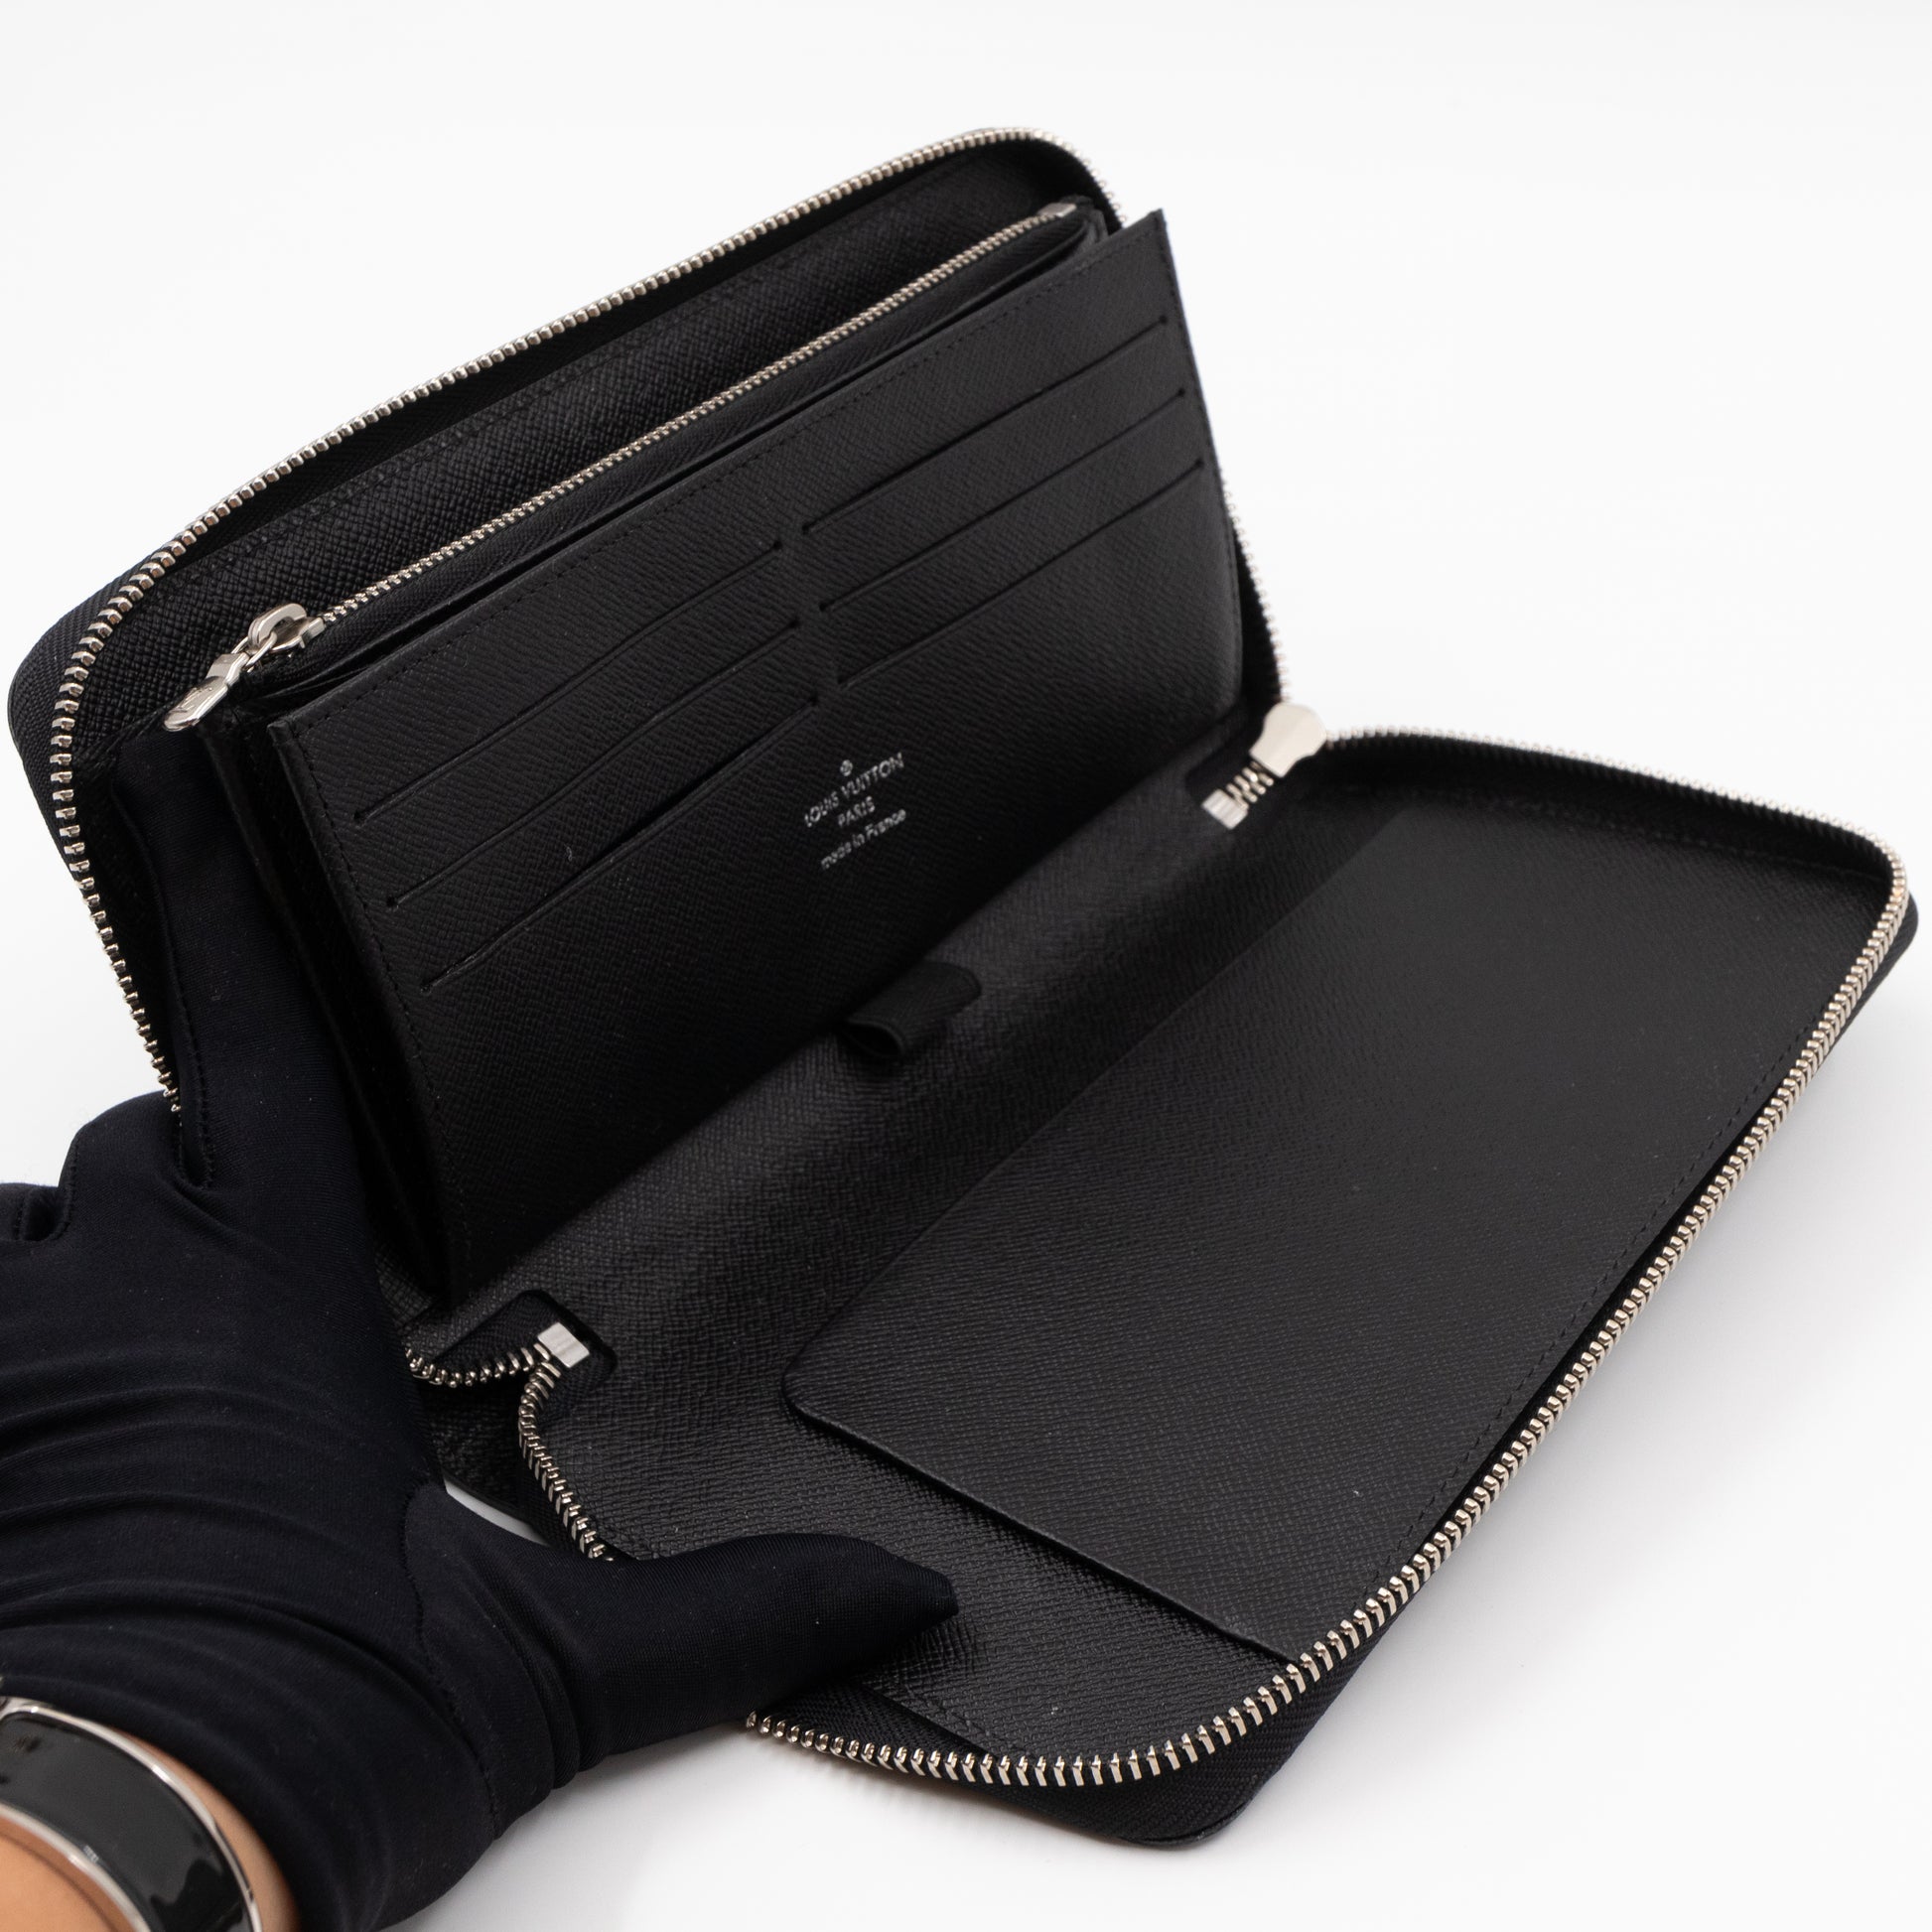 Louis Vuitton Zippy Organizer Epi Leather wallet black